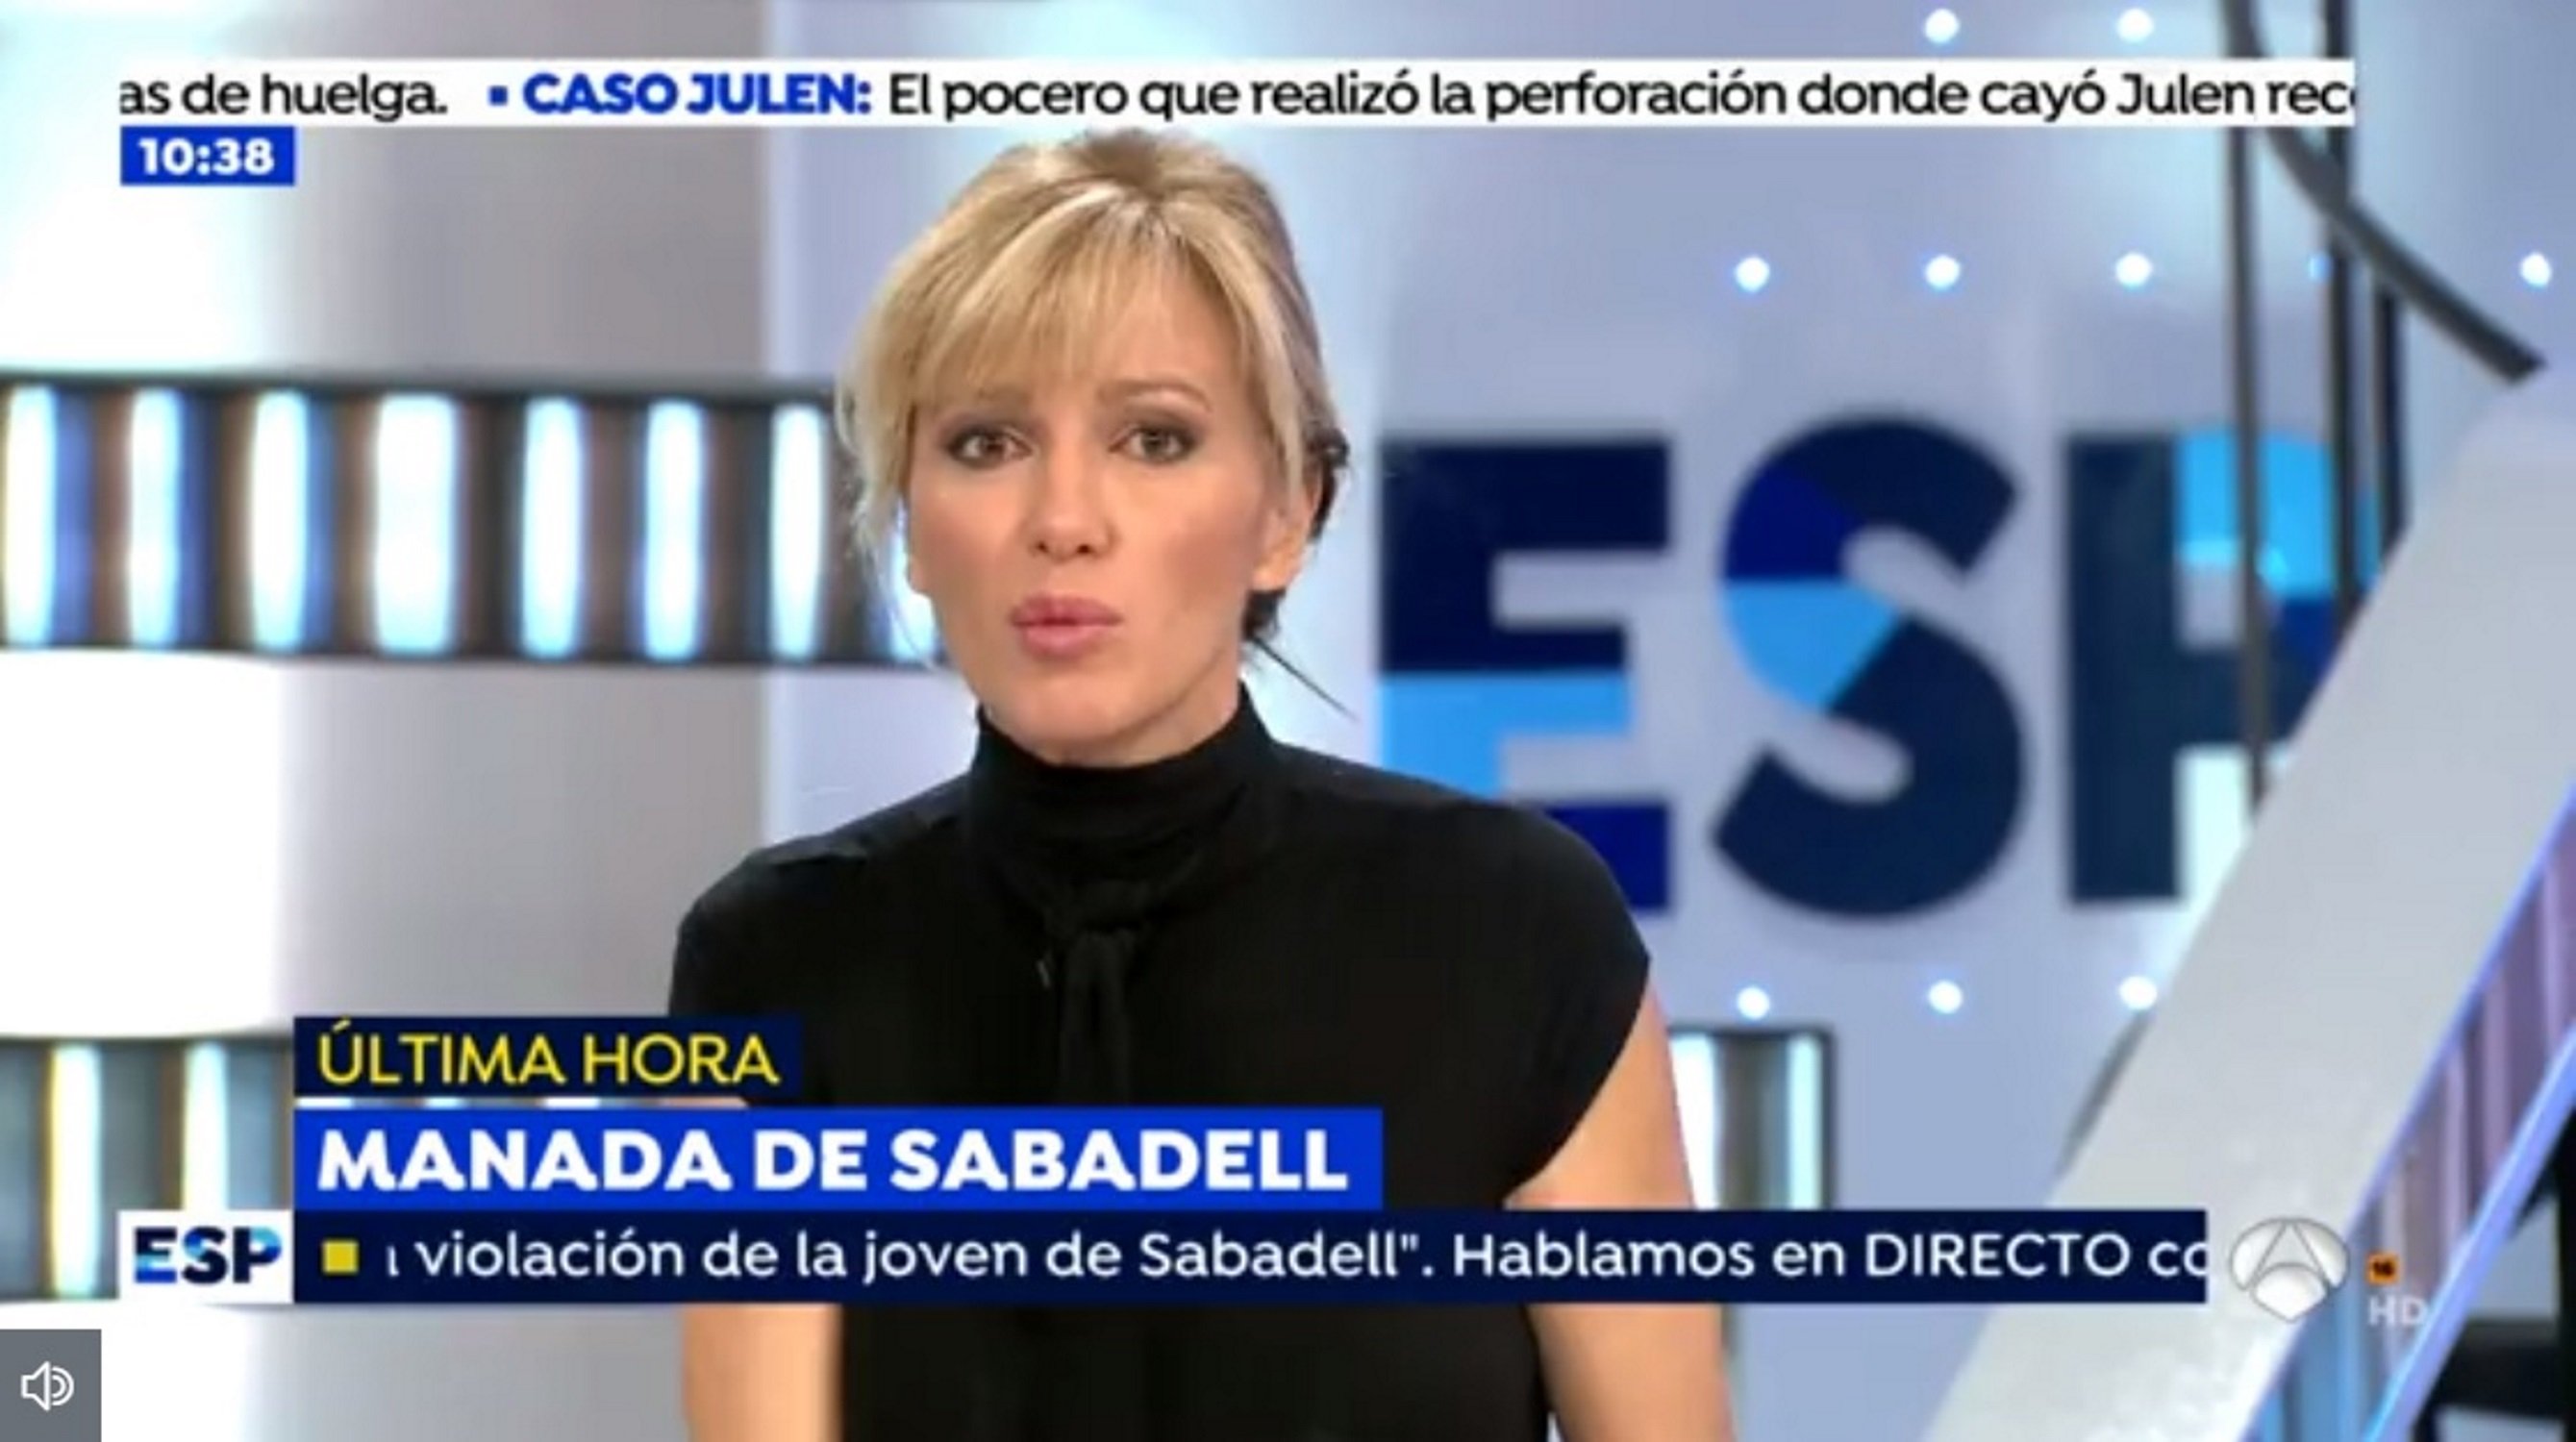 Griso emet imatges d’estelades per parlar de la violació de Sabadell